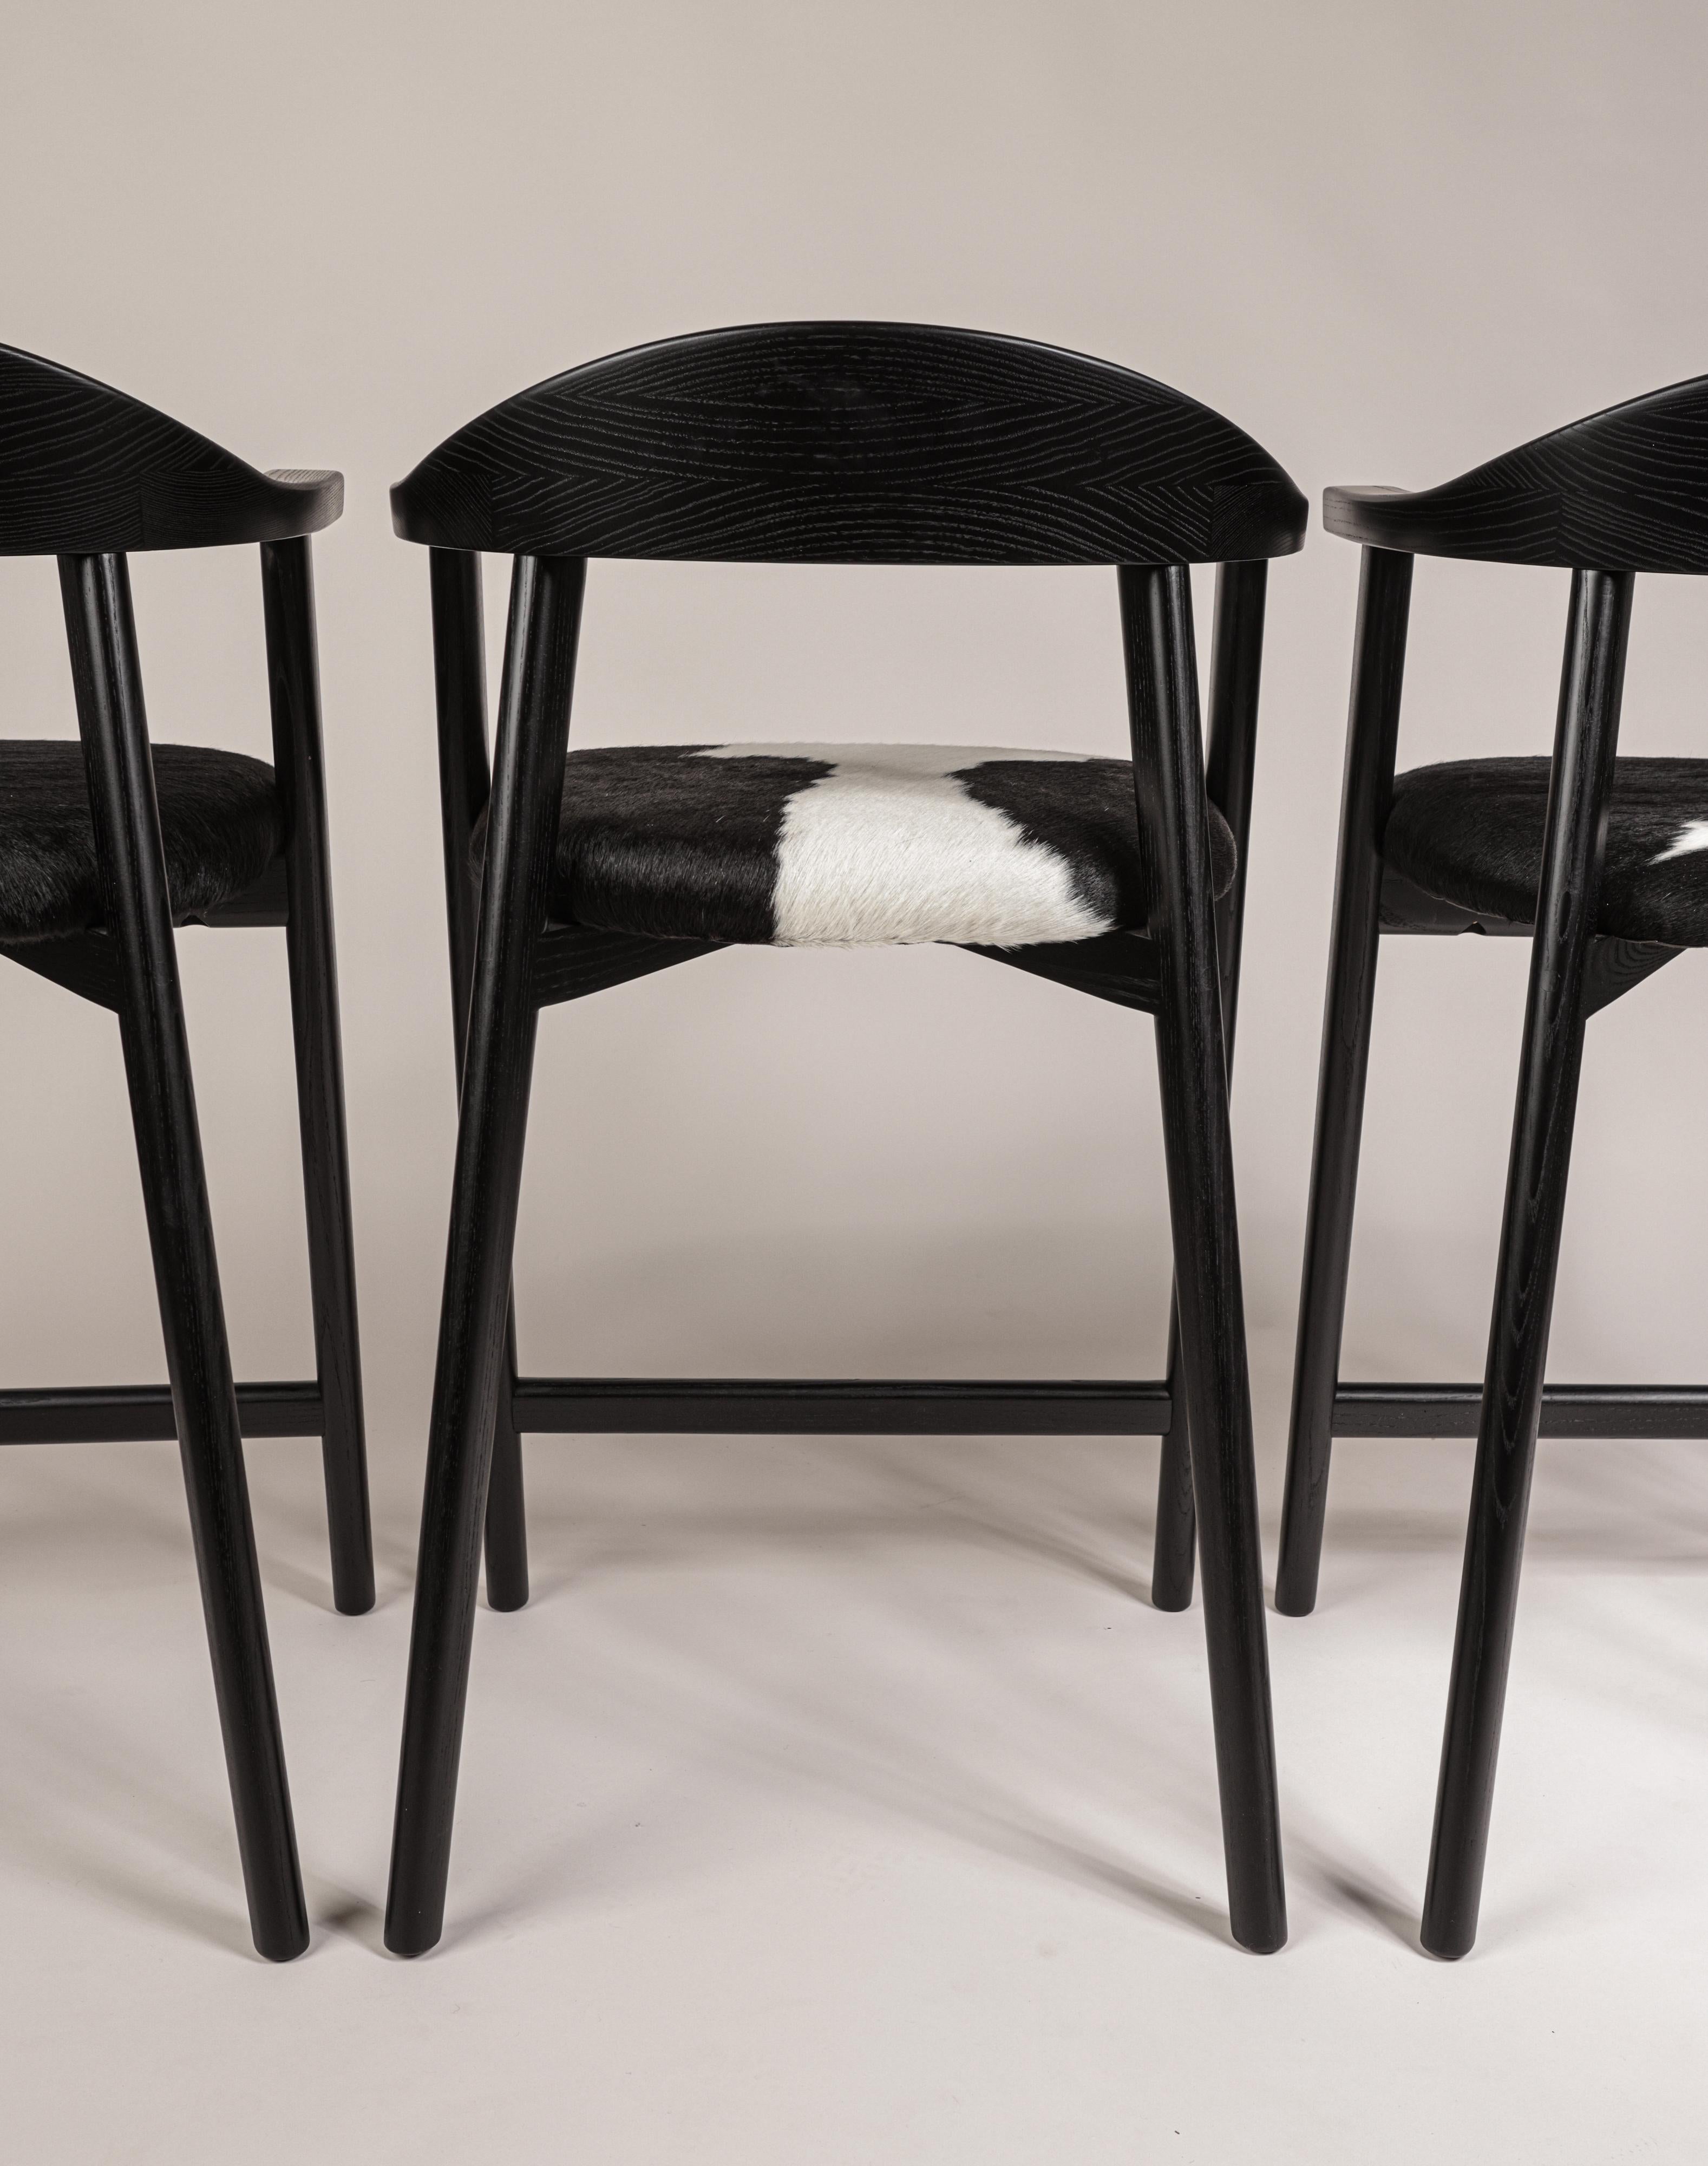 Karve Thekenhocker aus geschwärzter Esche mit schwarz-weißem Rindslederbezug. Ein klassisches Design, elegant und leicht in der Form, handgefertigt, um Generationen zu überdauern. 
Dieses Set aus vier Thekenhockern ist wie abgebildet sofort